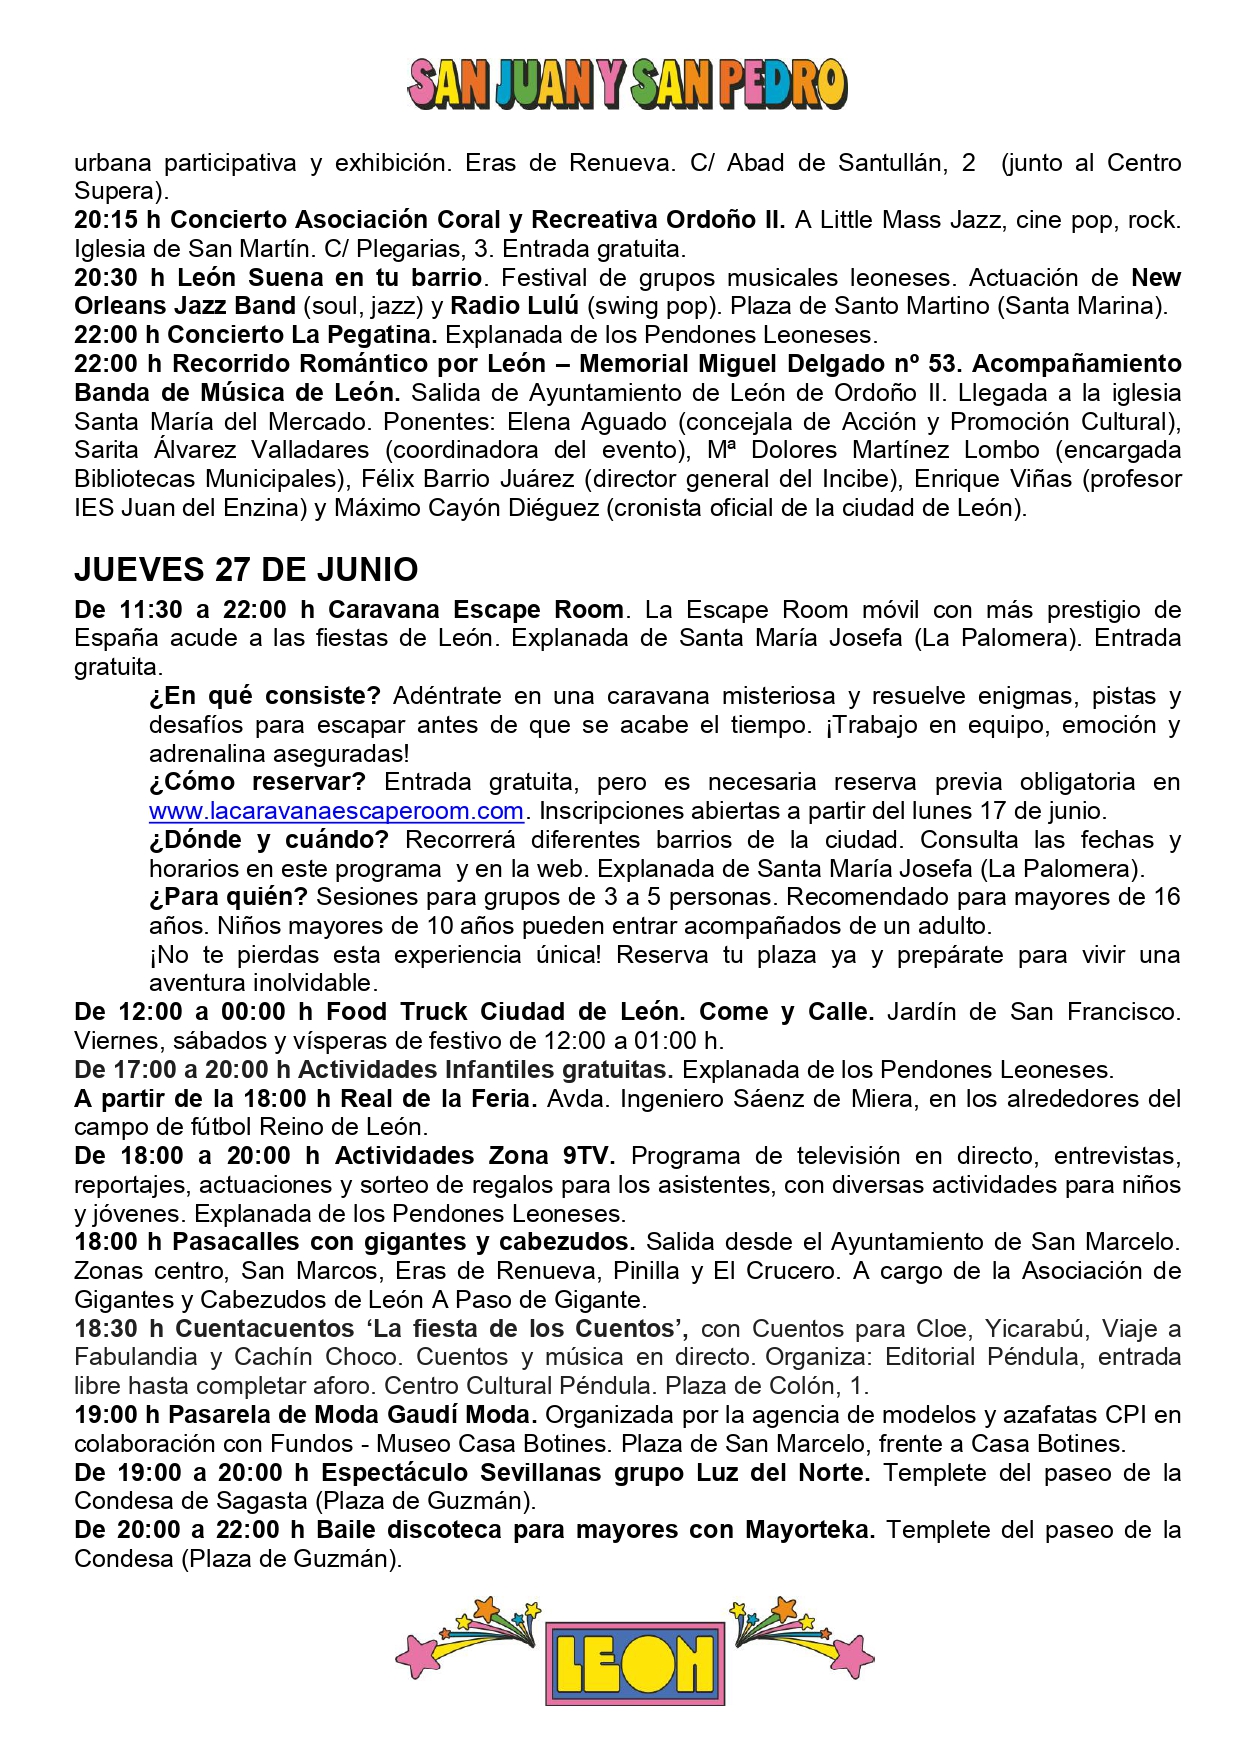 Programa de Fiestas San Juan y San Pedro en León, conciertos, deportes y todas las actividades 13